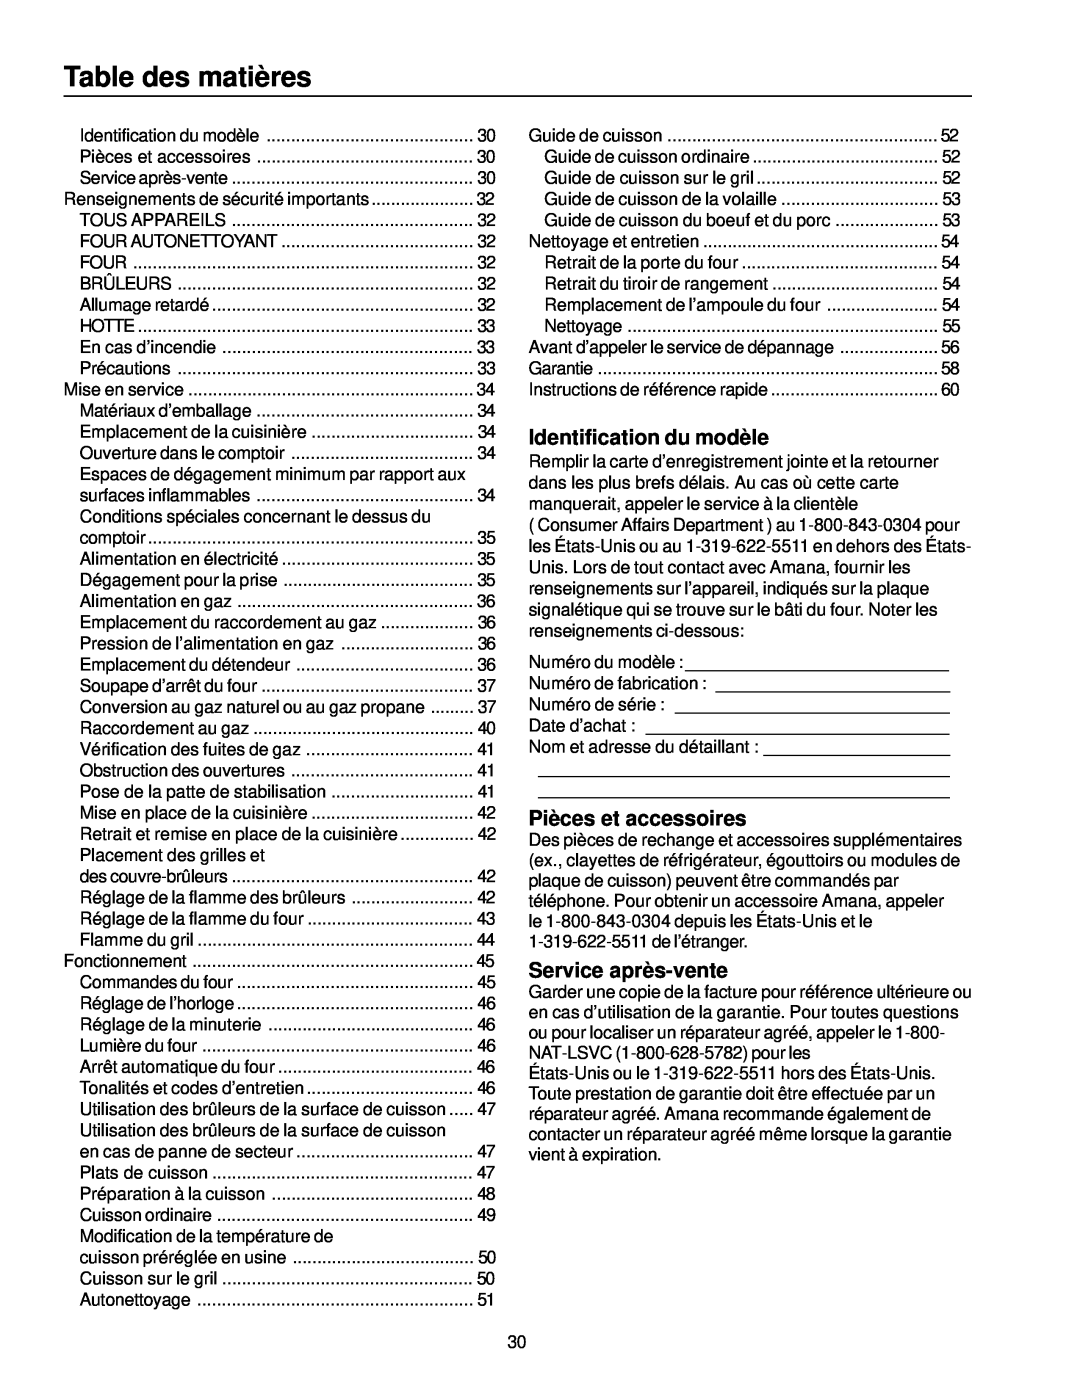 Amana ARG7302 manual Table des matières, Identification du modèle, Pièces et accessoires, Service après-vente 